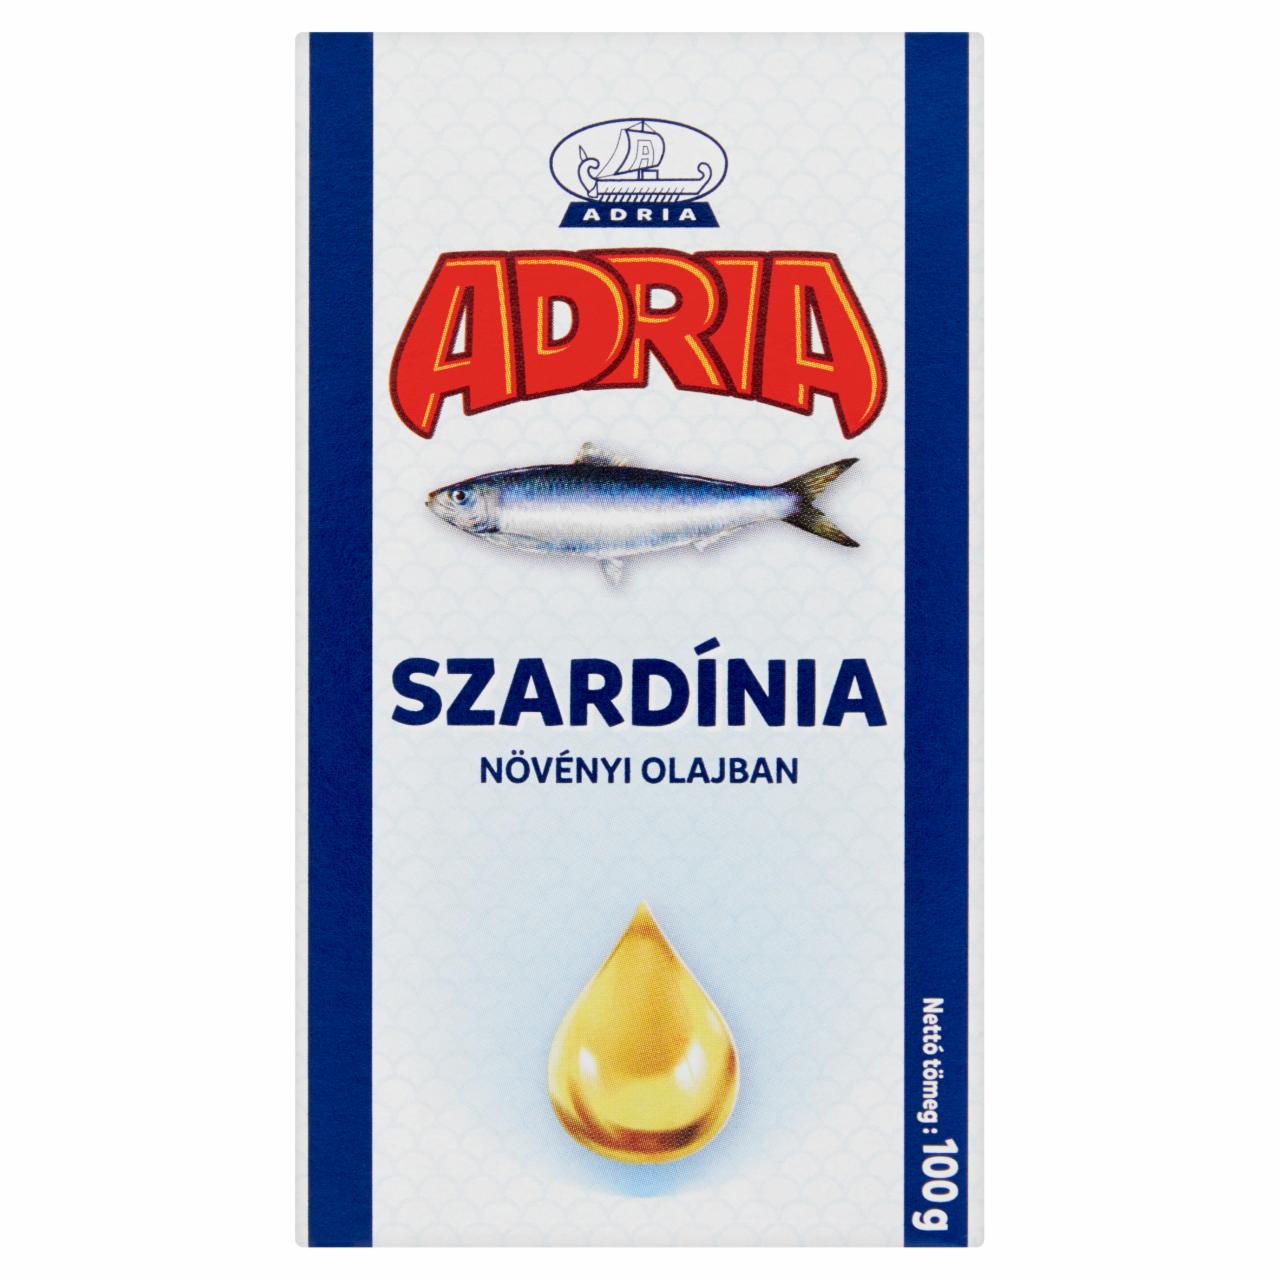 Képek - Adria szardínia növényi olajban 100 g